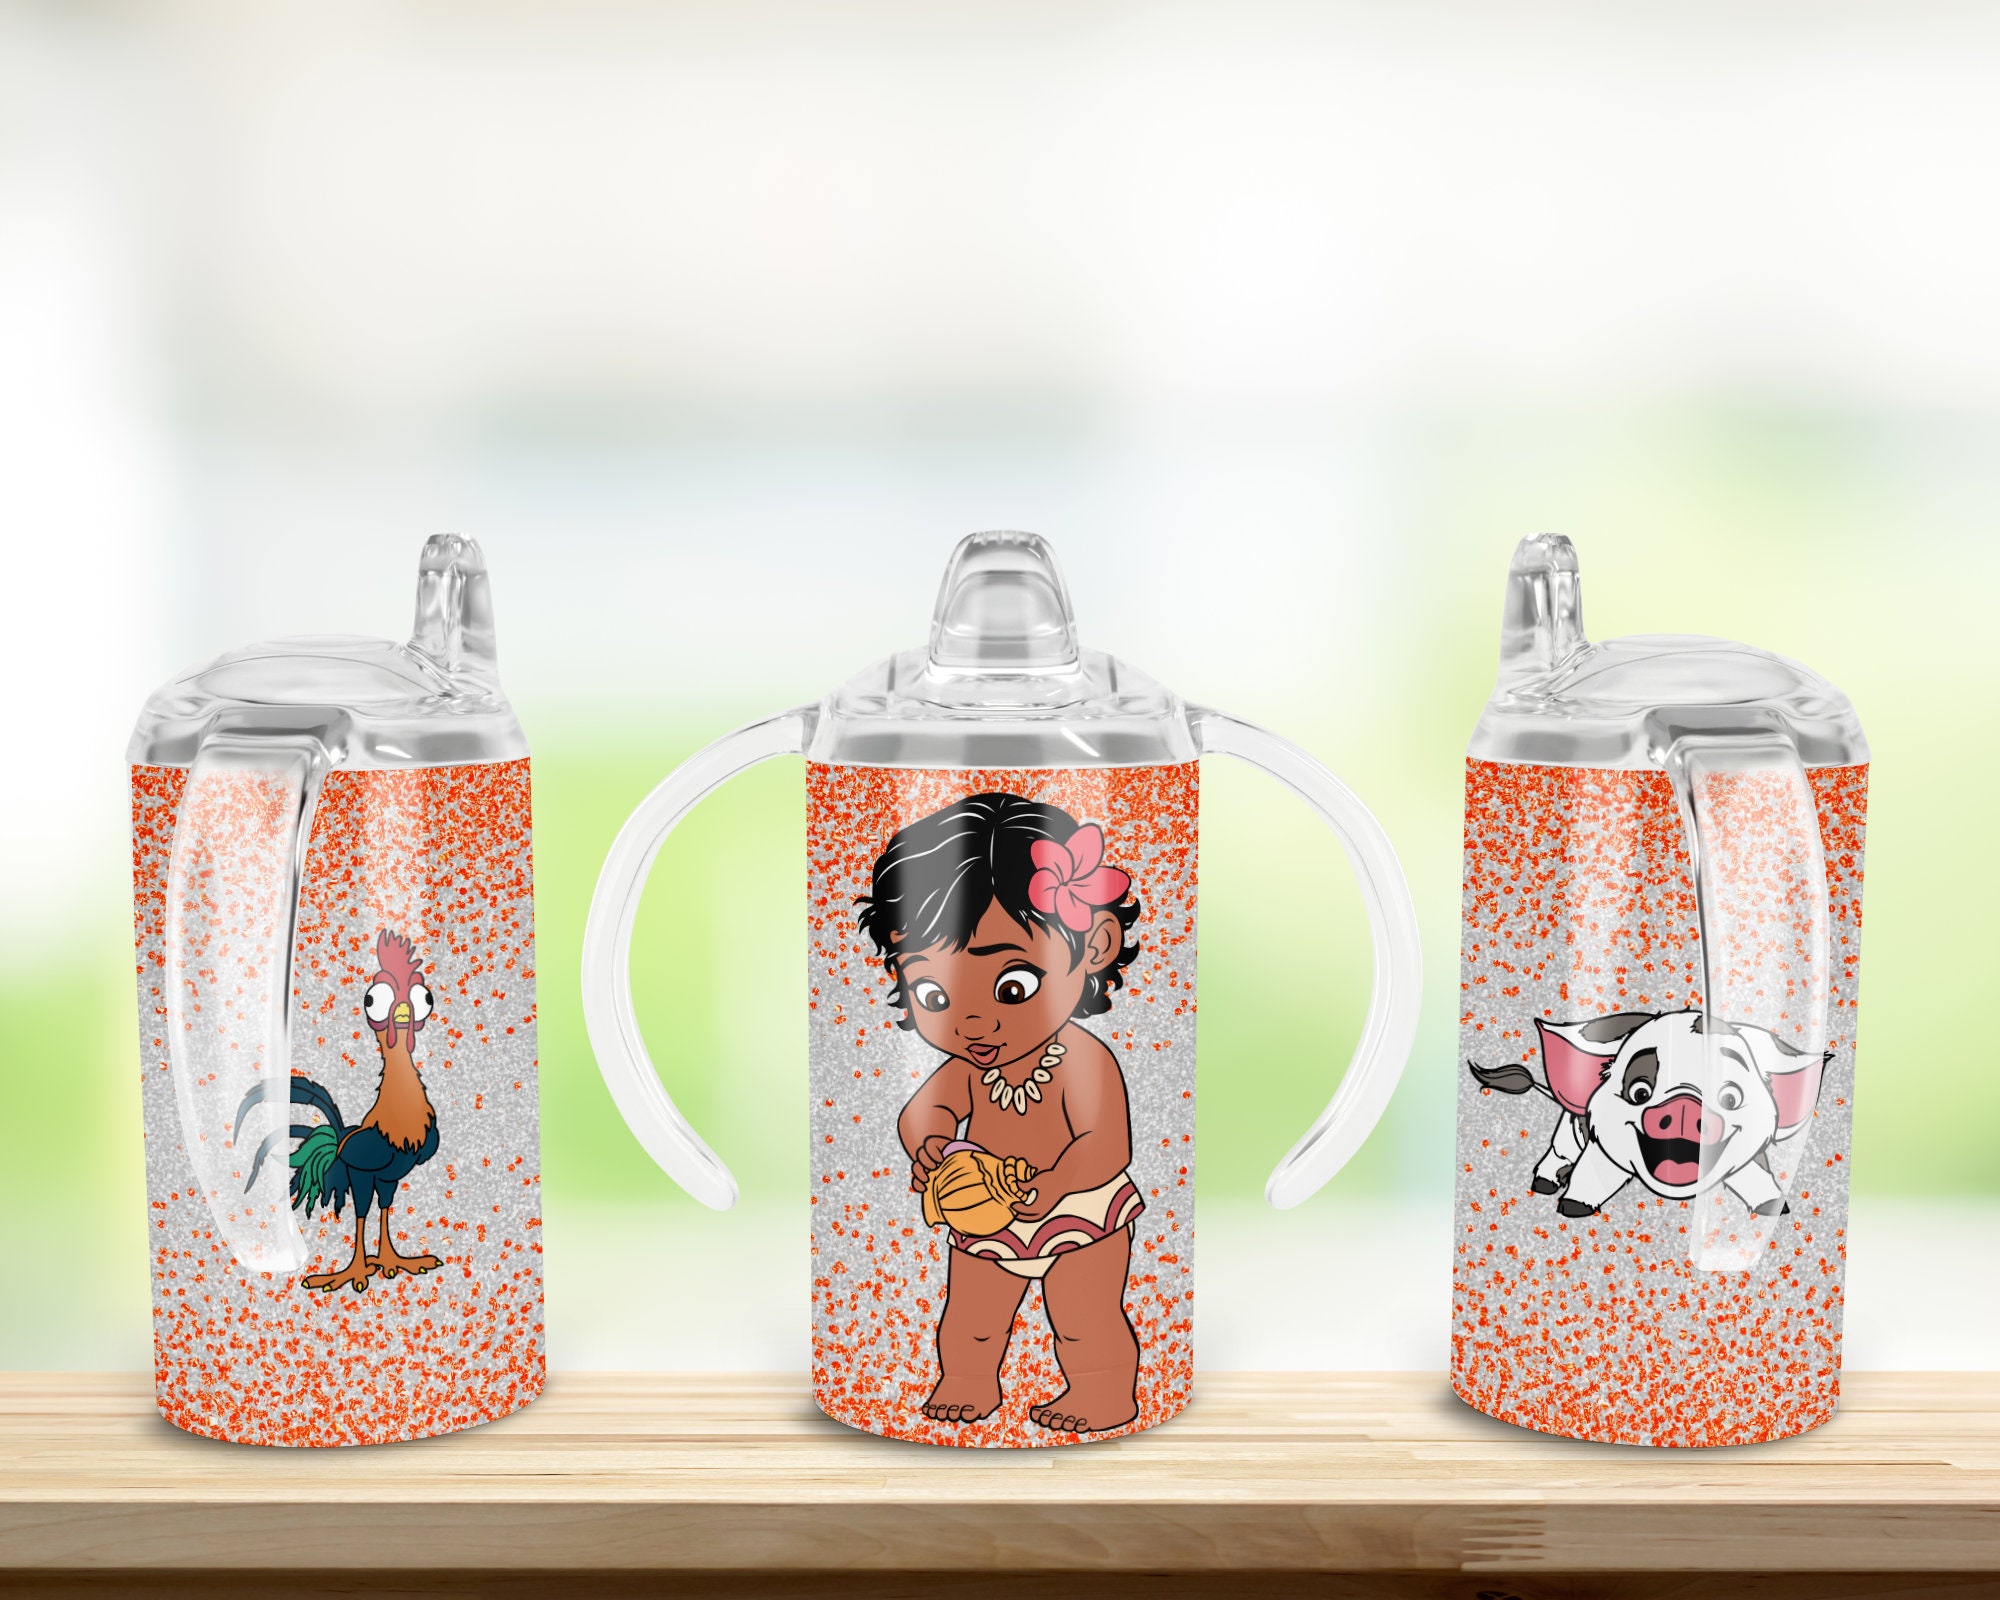 Moana Maui Pua 3D Toddler Cup Mug Disney Cool Item